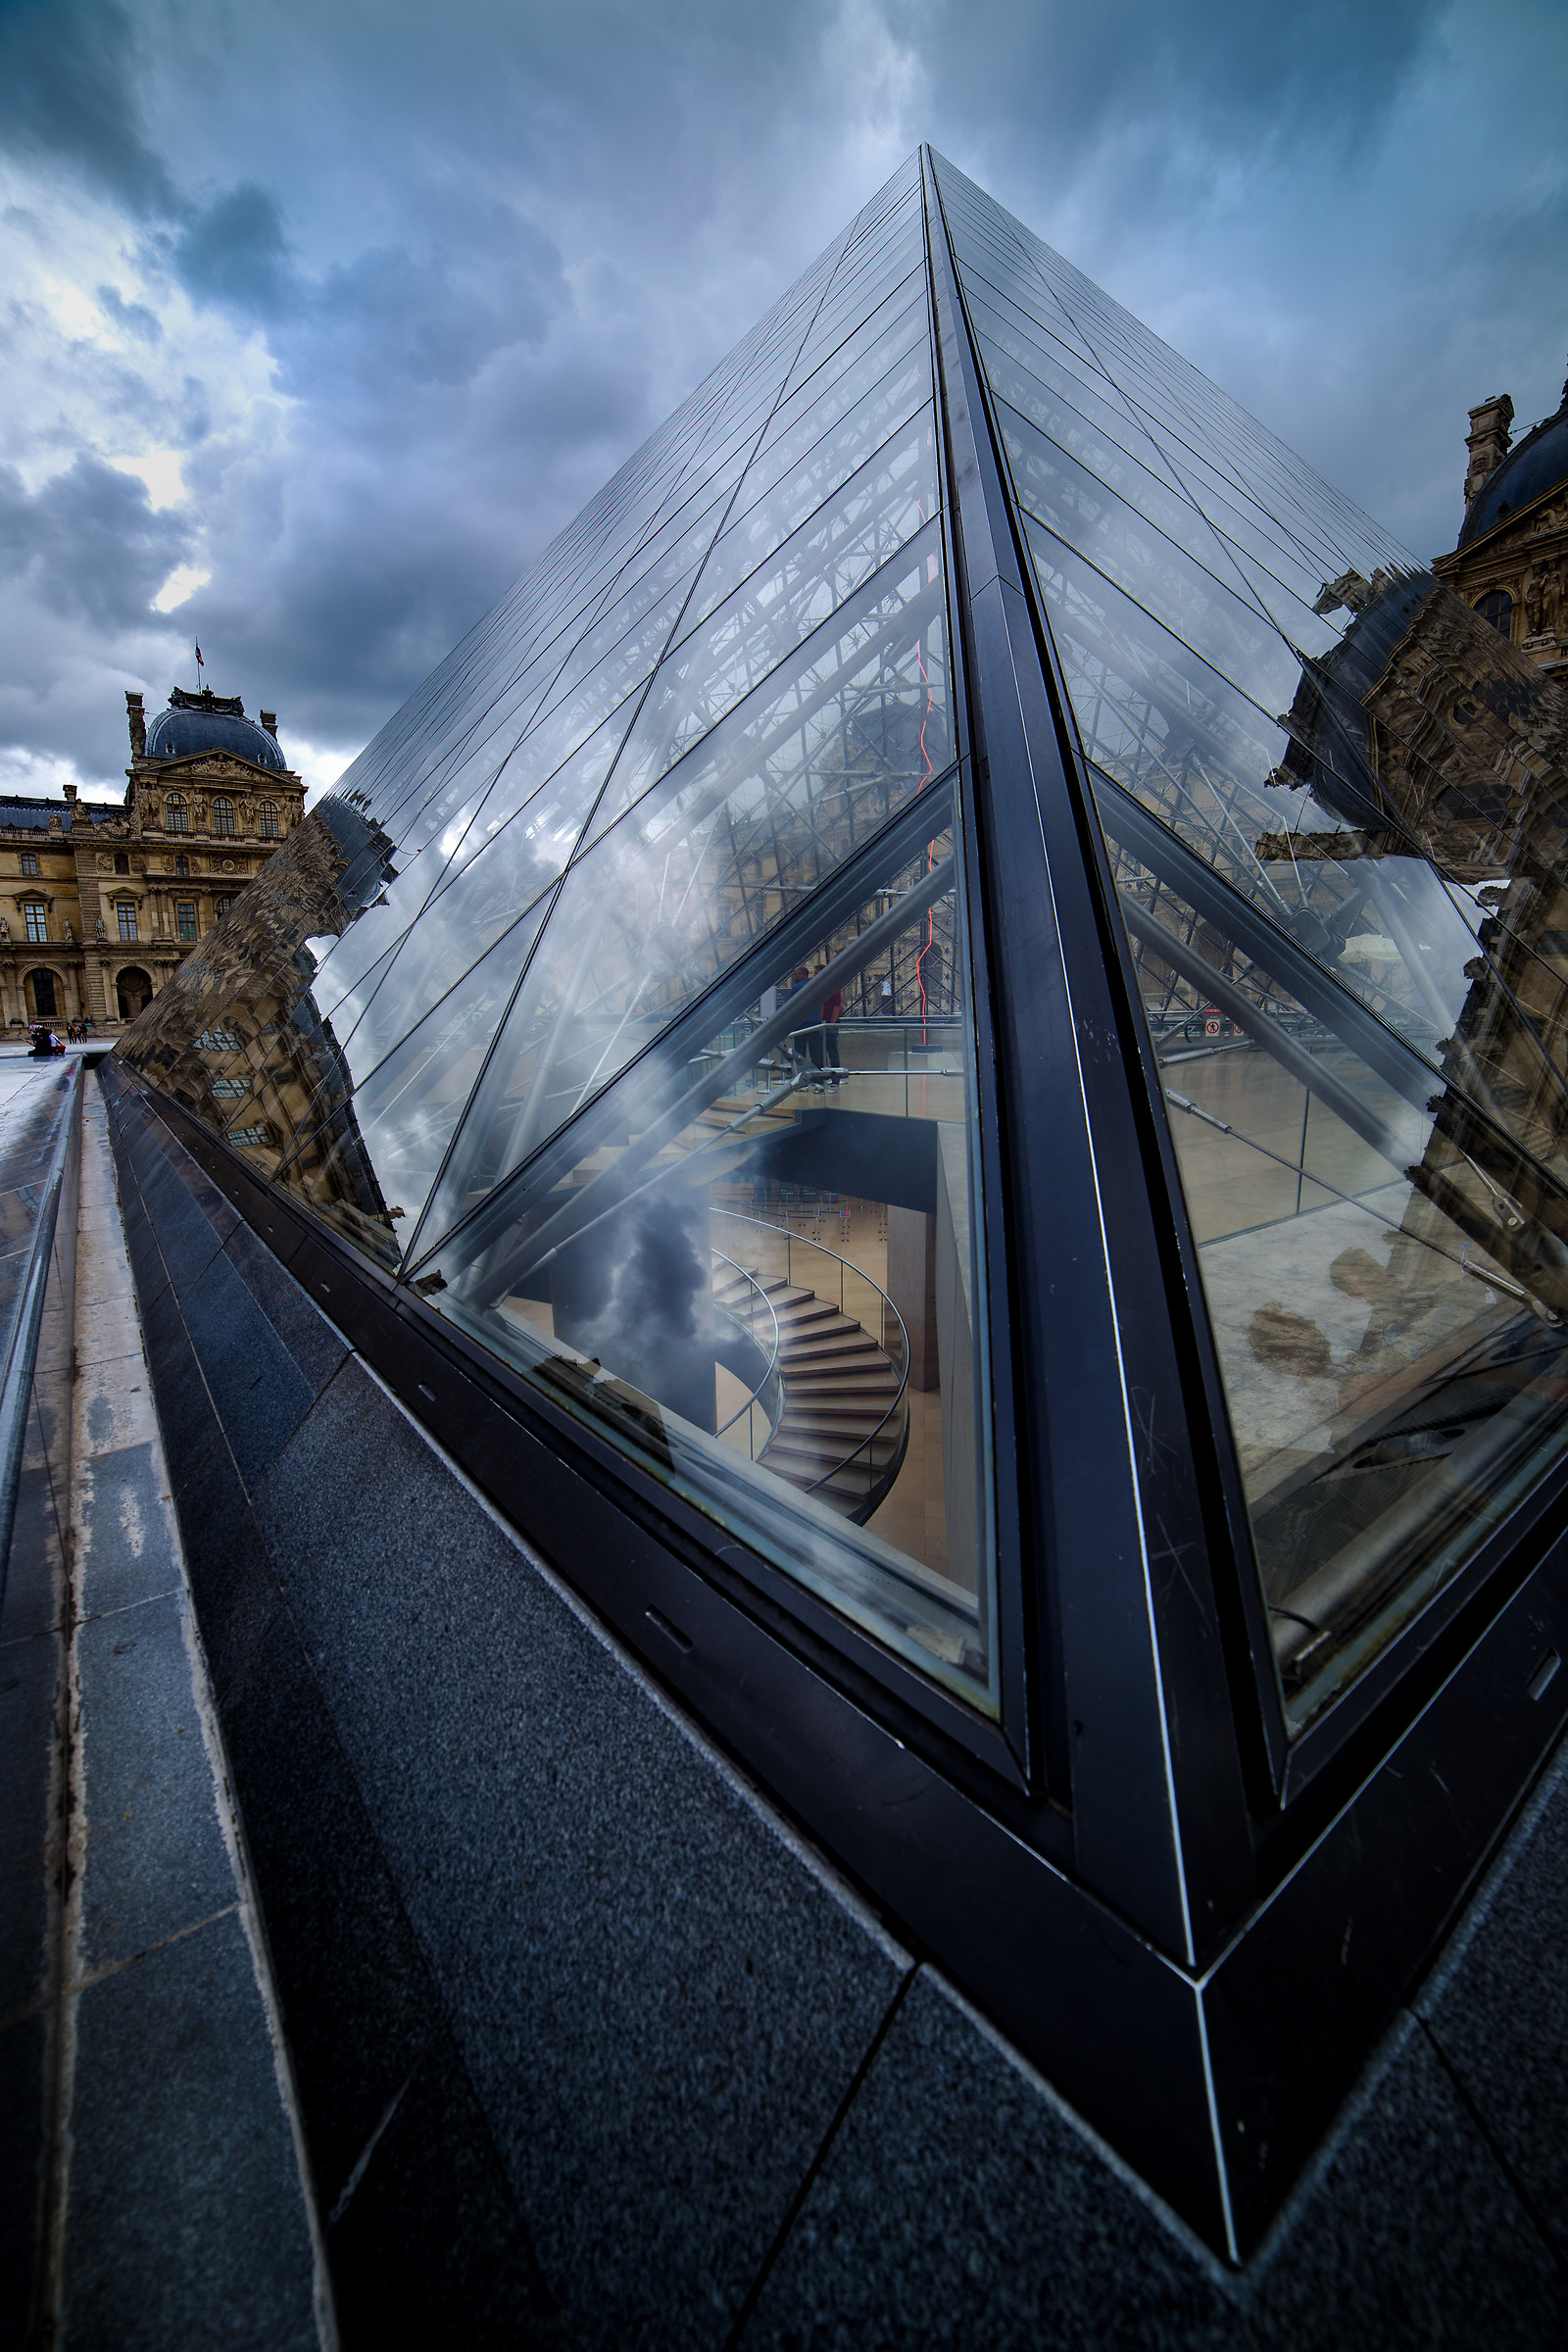 La piramide di vetro al museo del Louvre...